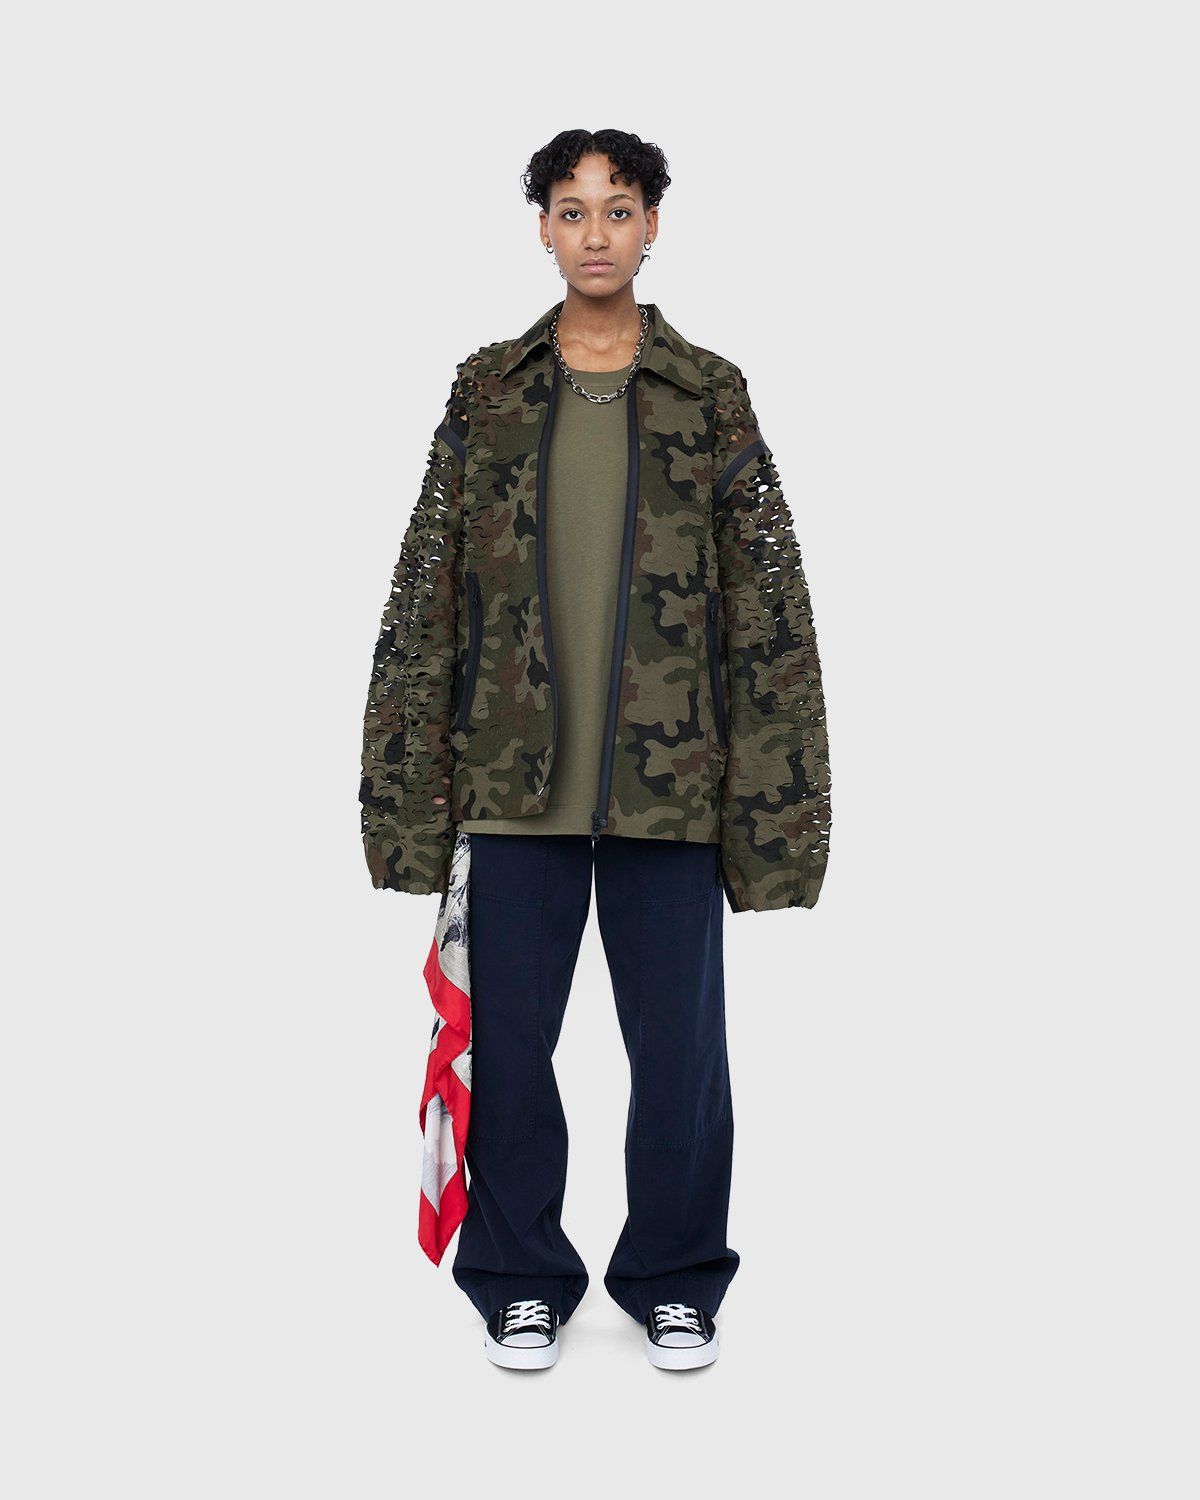 Dries van Noten – Voyde Laser Jacket Camouflage - Outerwear - Brown - Image 8